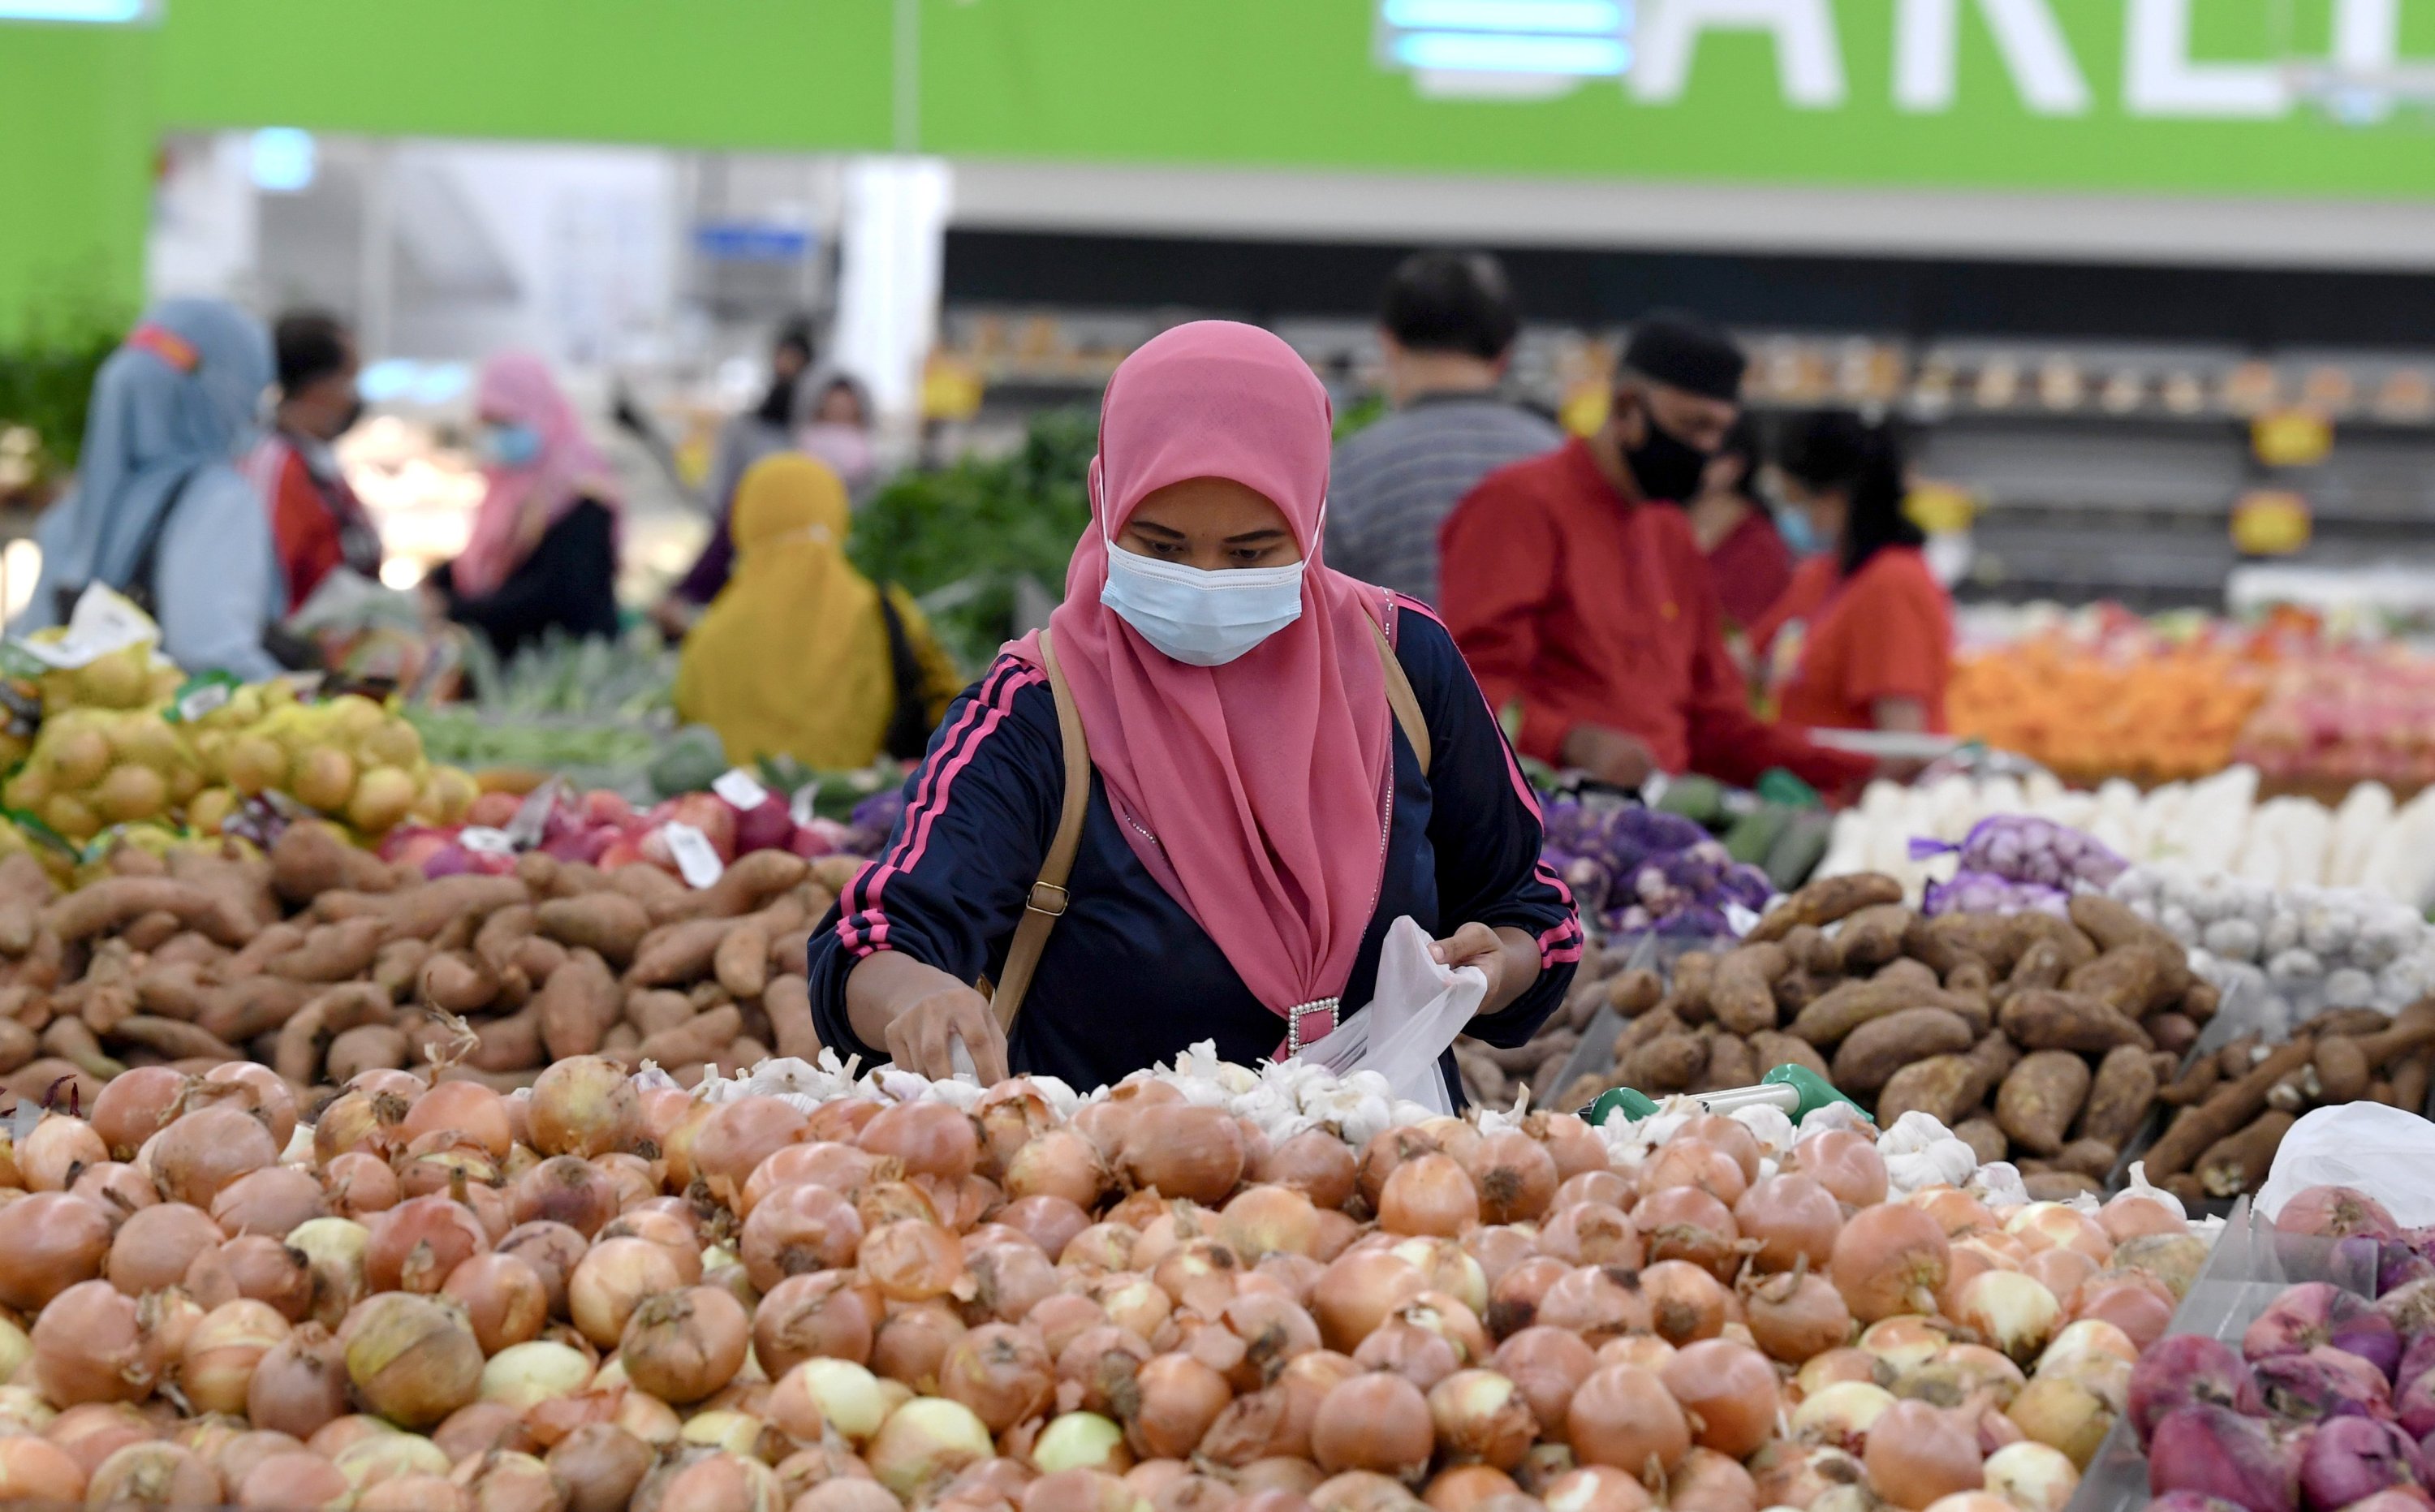 “由于补贴，马来西亚的通货膨胀仍然可控” – 婆罗洲邮报